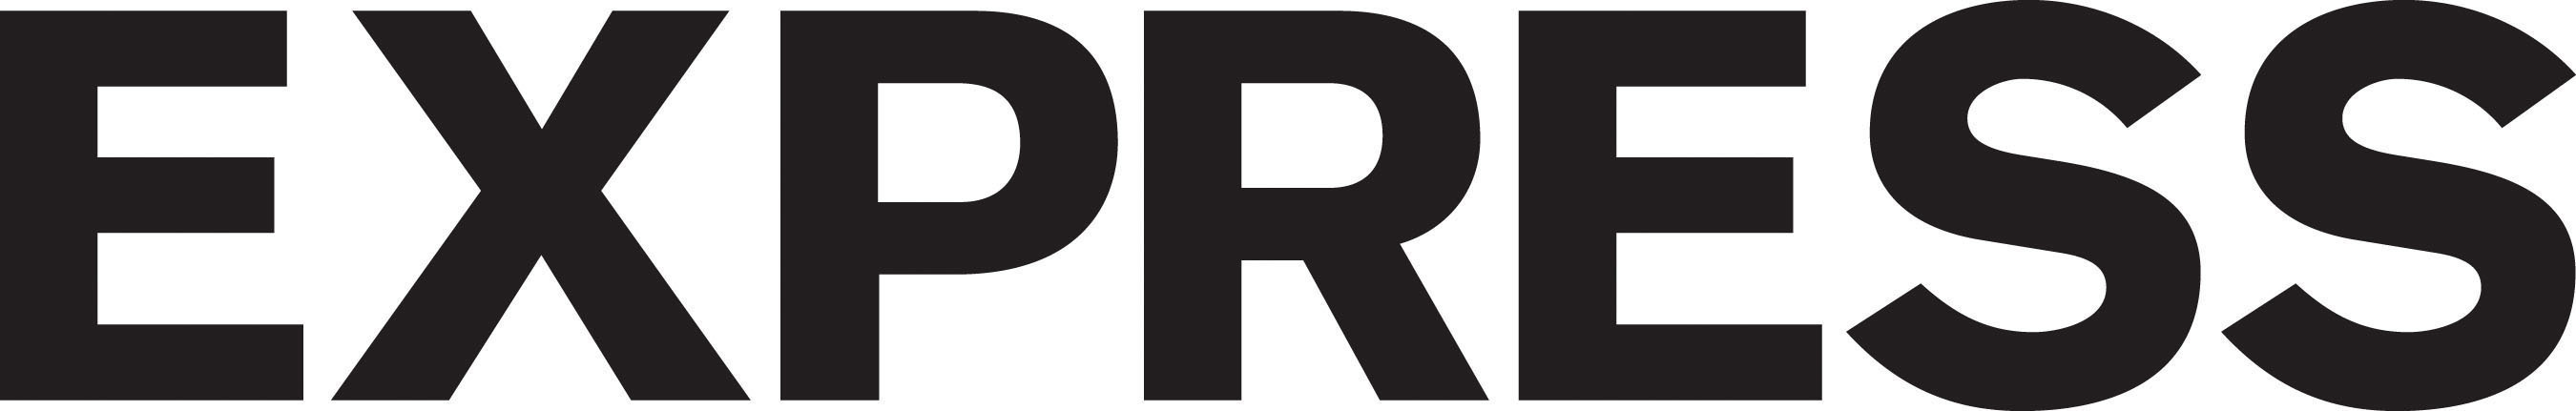 EXPRESS Logo.